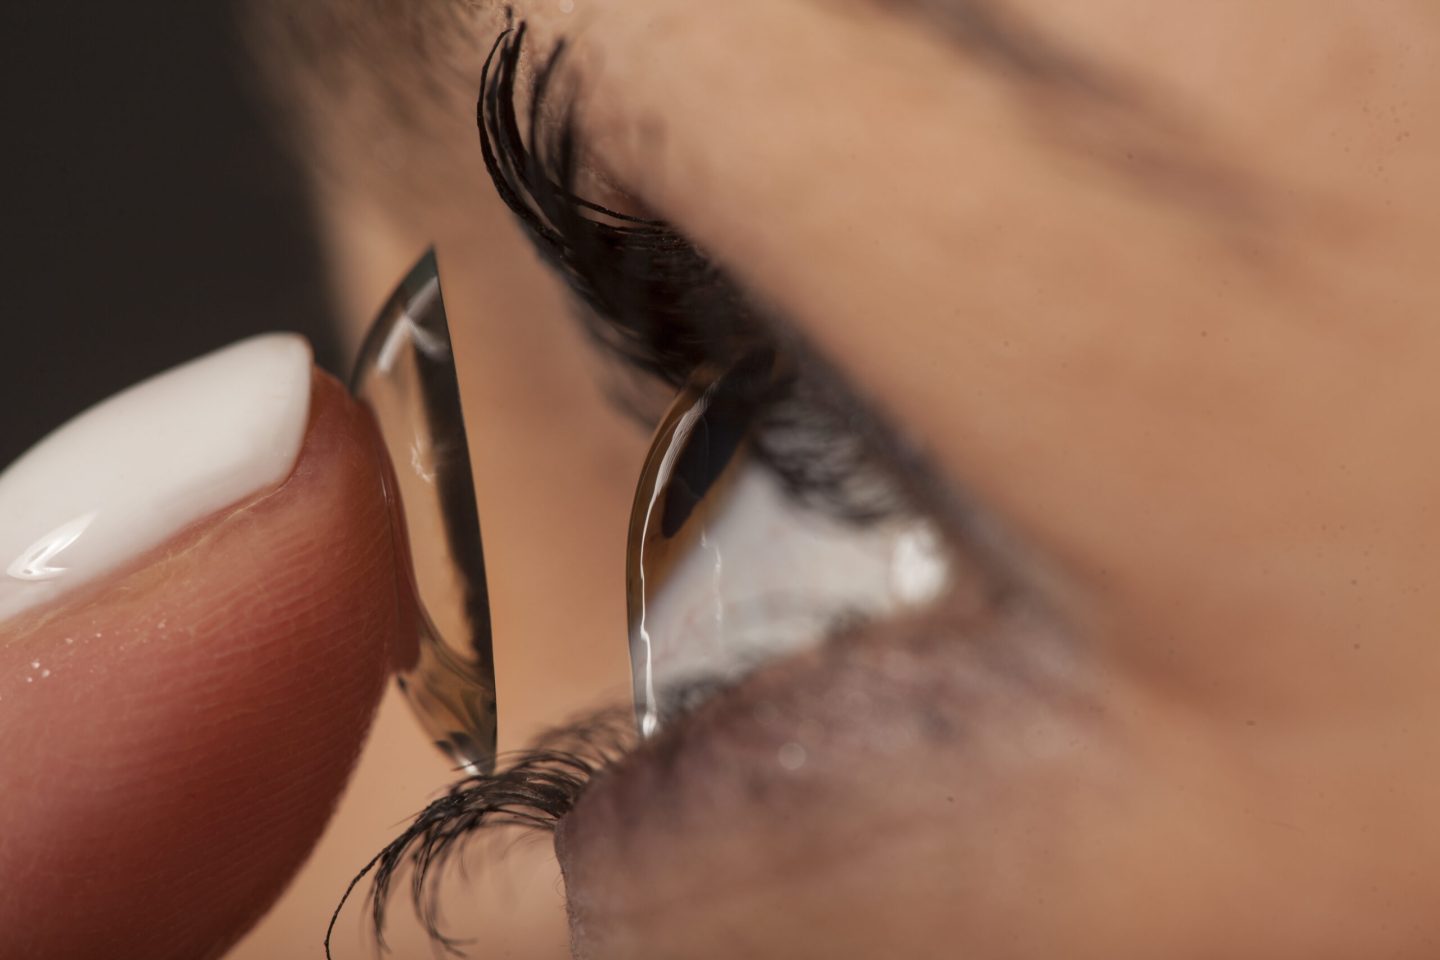 العدسات اللاصقة الذكية قد تساعد على علاج السبب الرئيسي للعمى